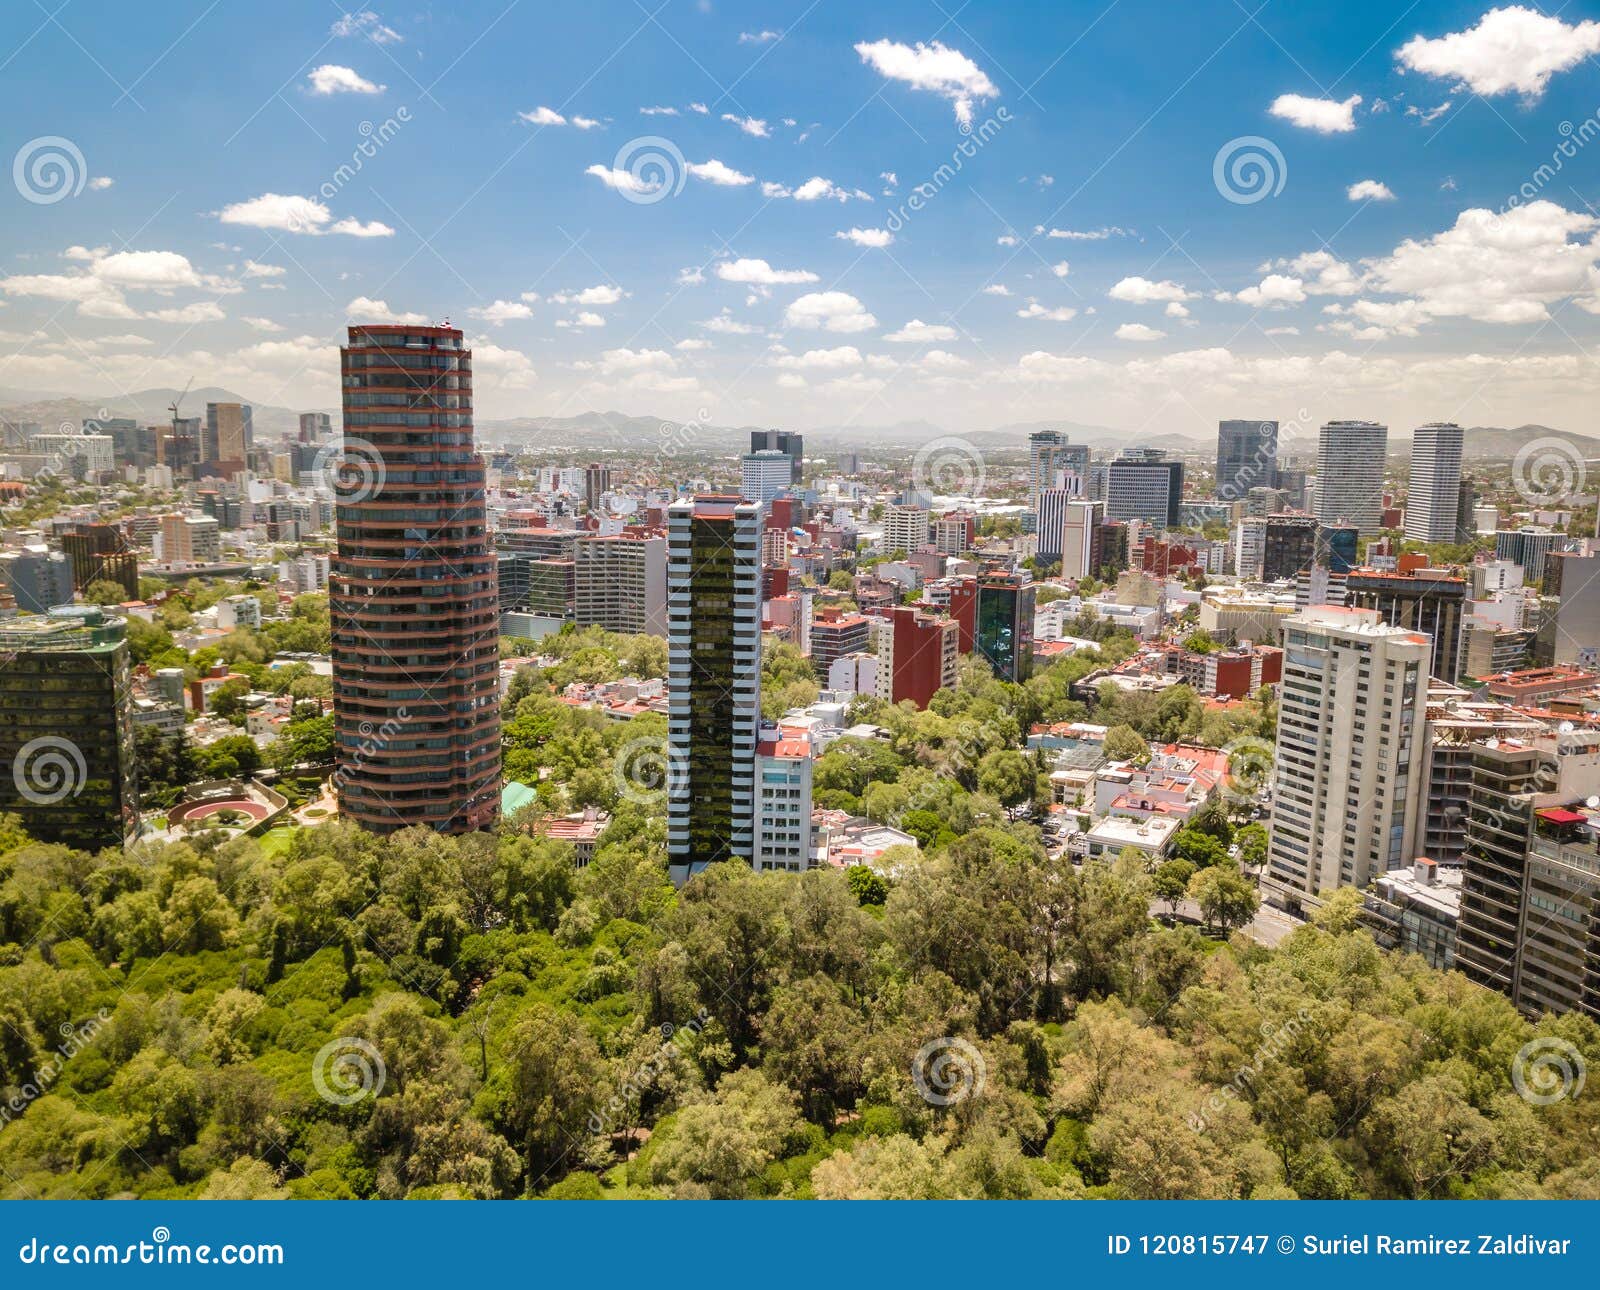 mexico city - chapultepec skyline